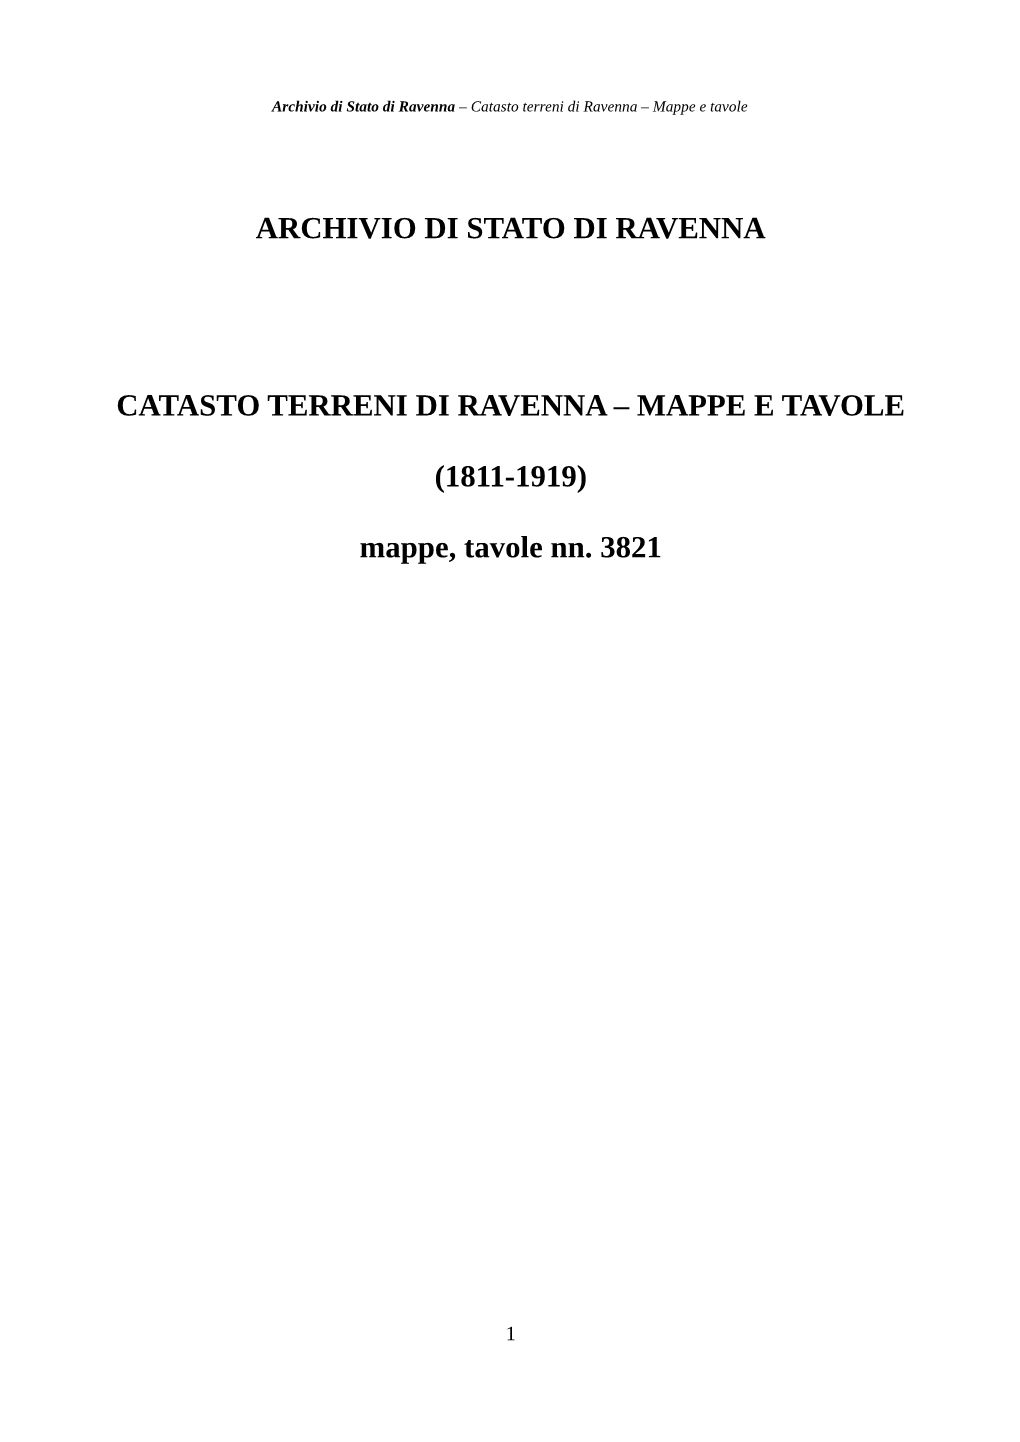 ARCHIVIO DI STATO DI RAVENNA CATASTO TERRENI DI RAVENNA – MAPPE E TAVOLE (1811-1919) Mappe, Tavole Nn. 3821